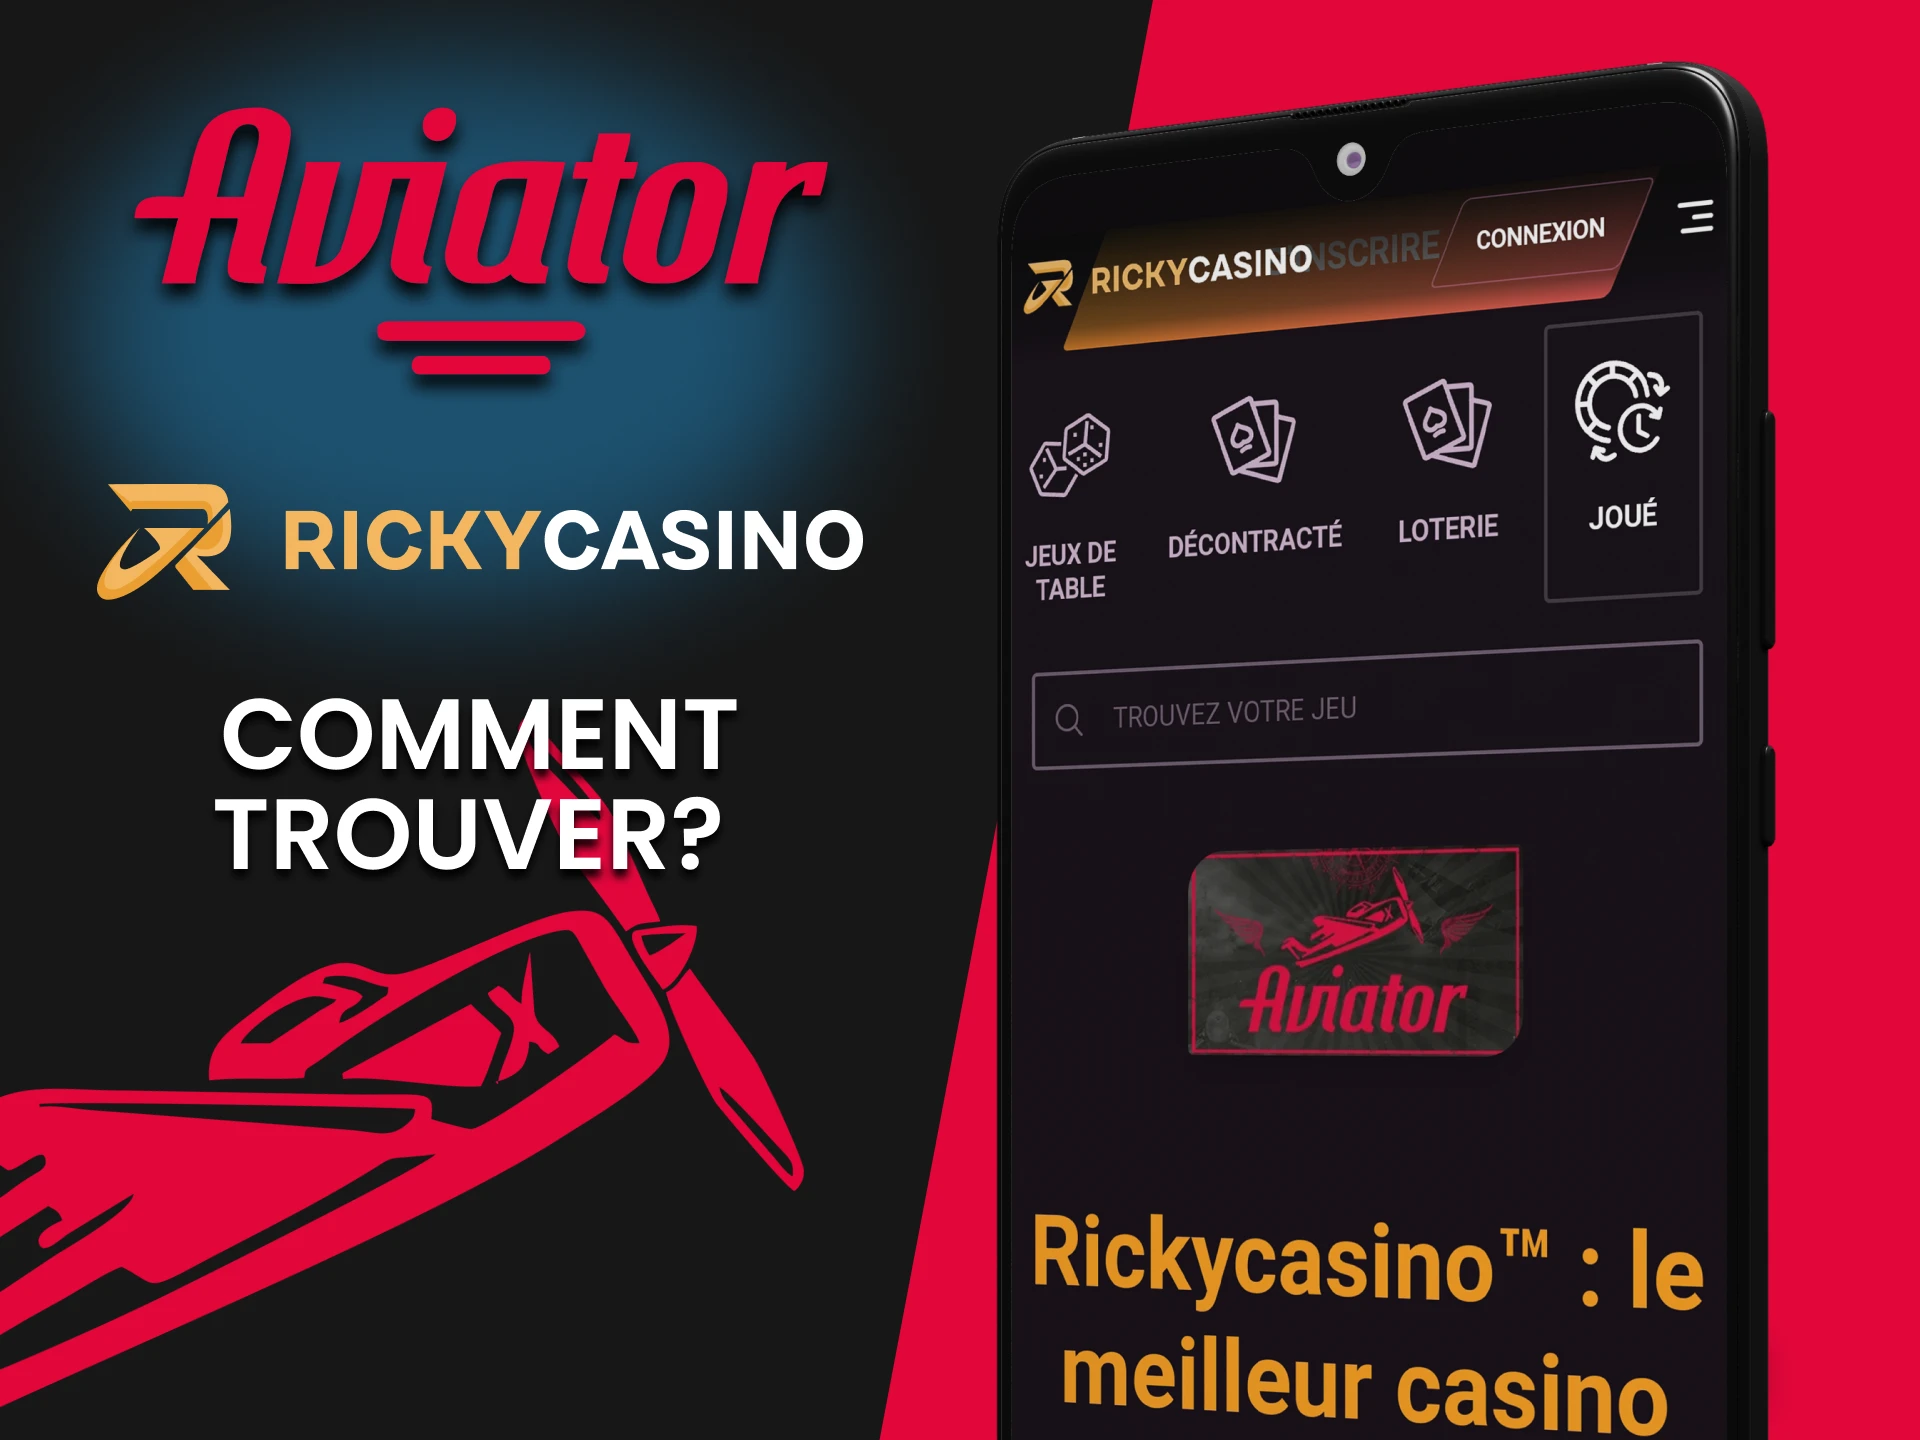 Dans la section casino de l'application Ricky Casino, vous pouvez trouver l'Aviator.